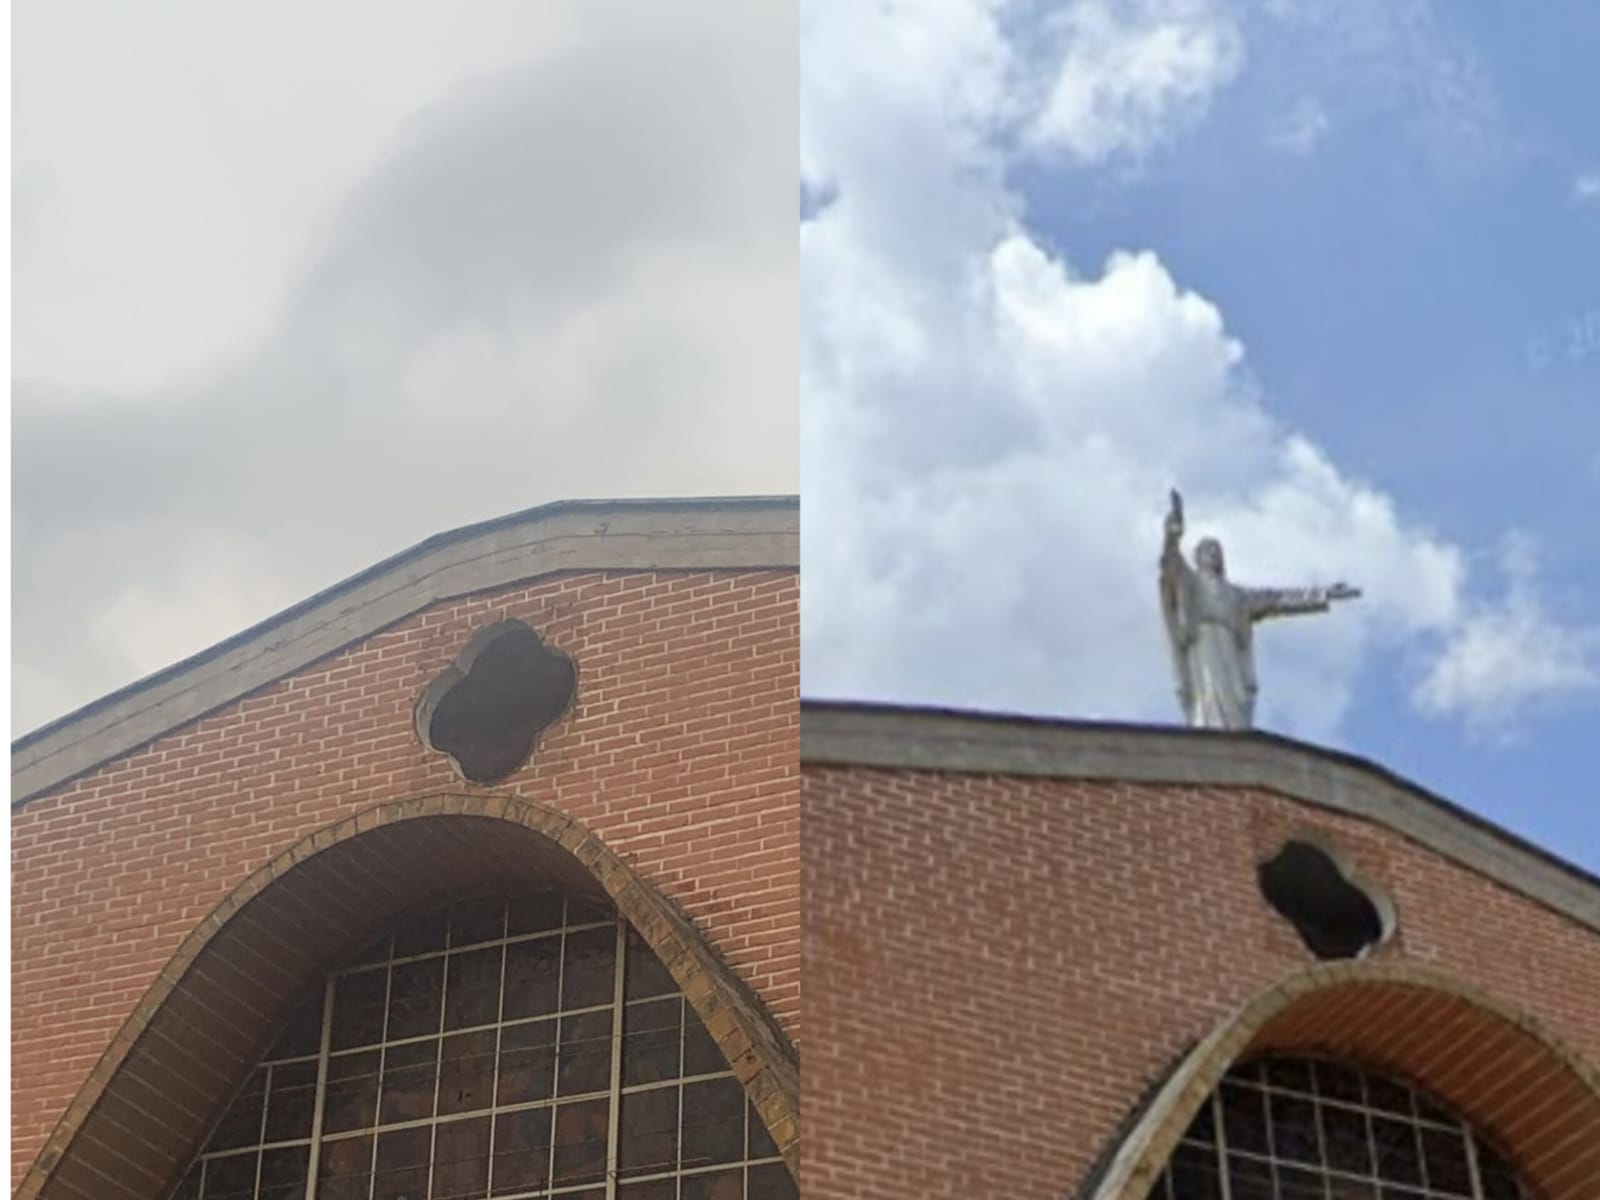 Los fuertes vientos tumbaron el cristo de la iglesia El Salvador